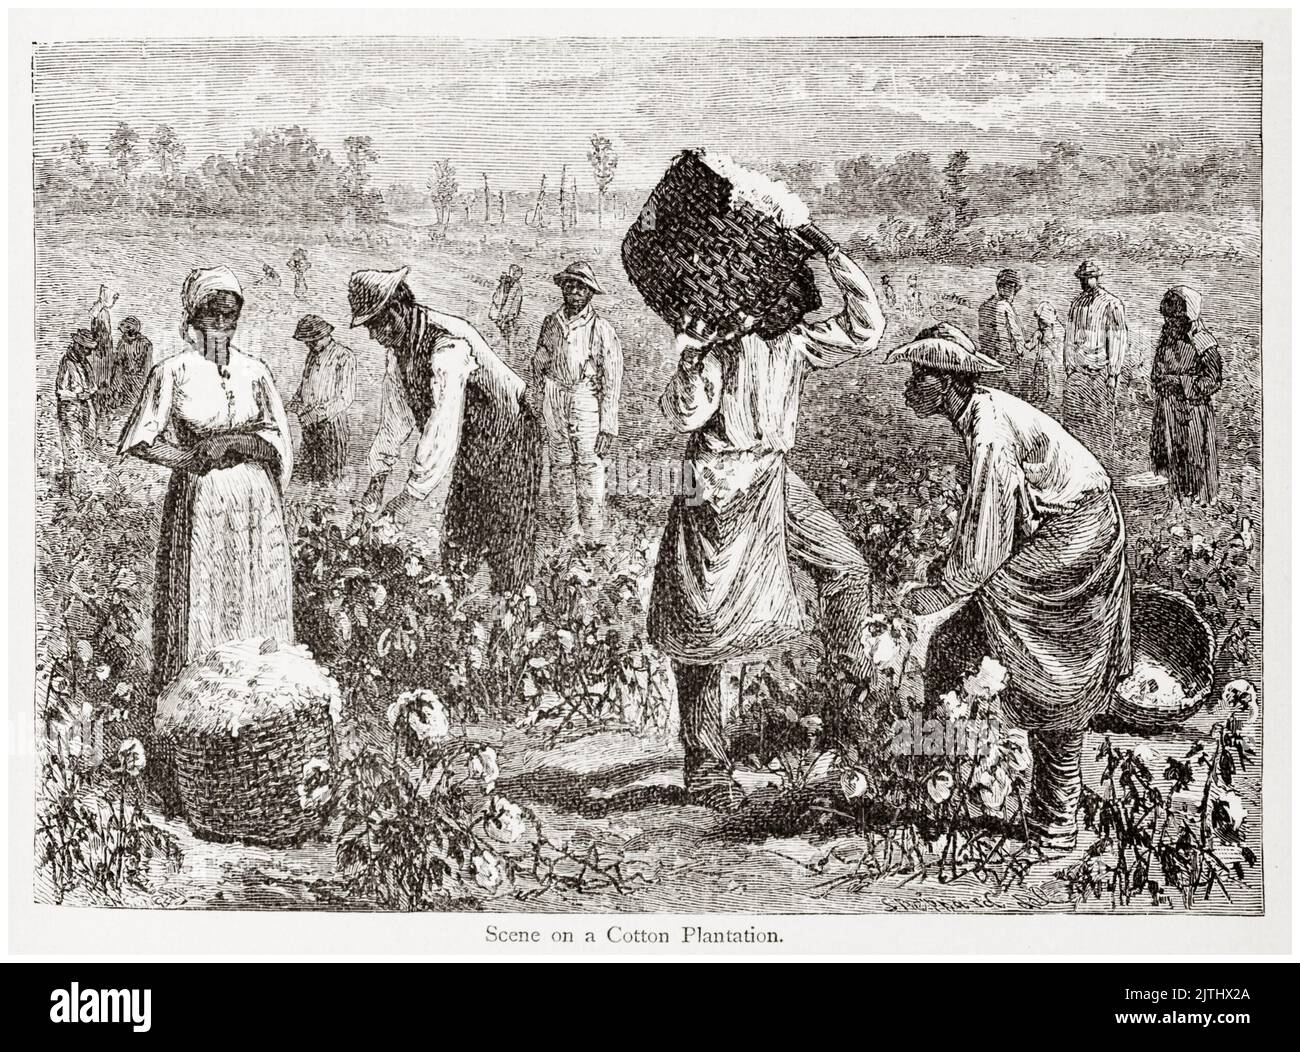 Schiavi su una piantagione di cotone negli stati meridionali dell'America, illustrazione, 1848 Foto Stock